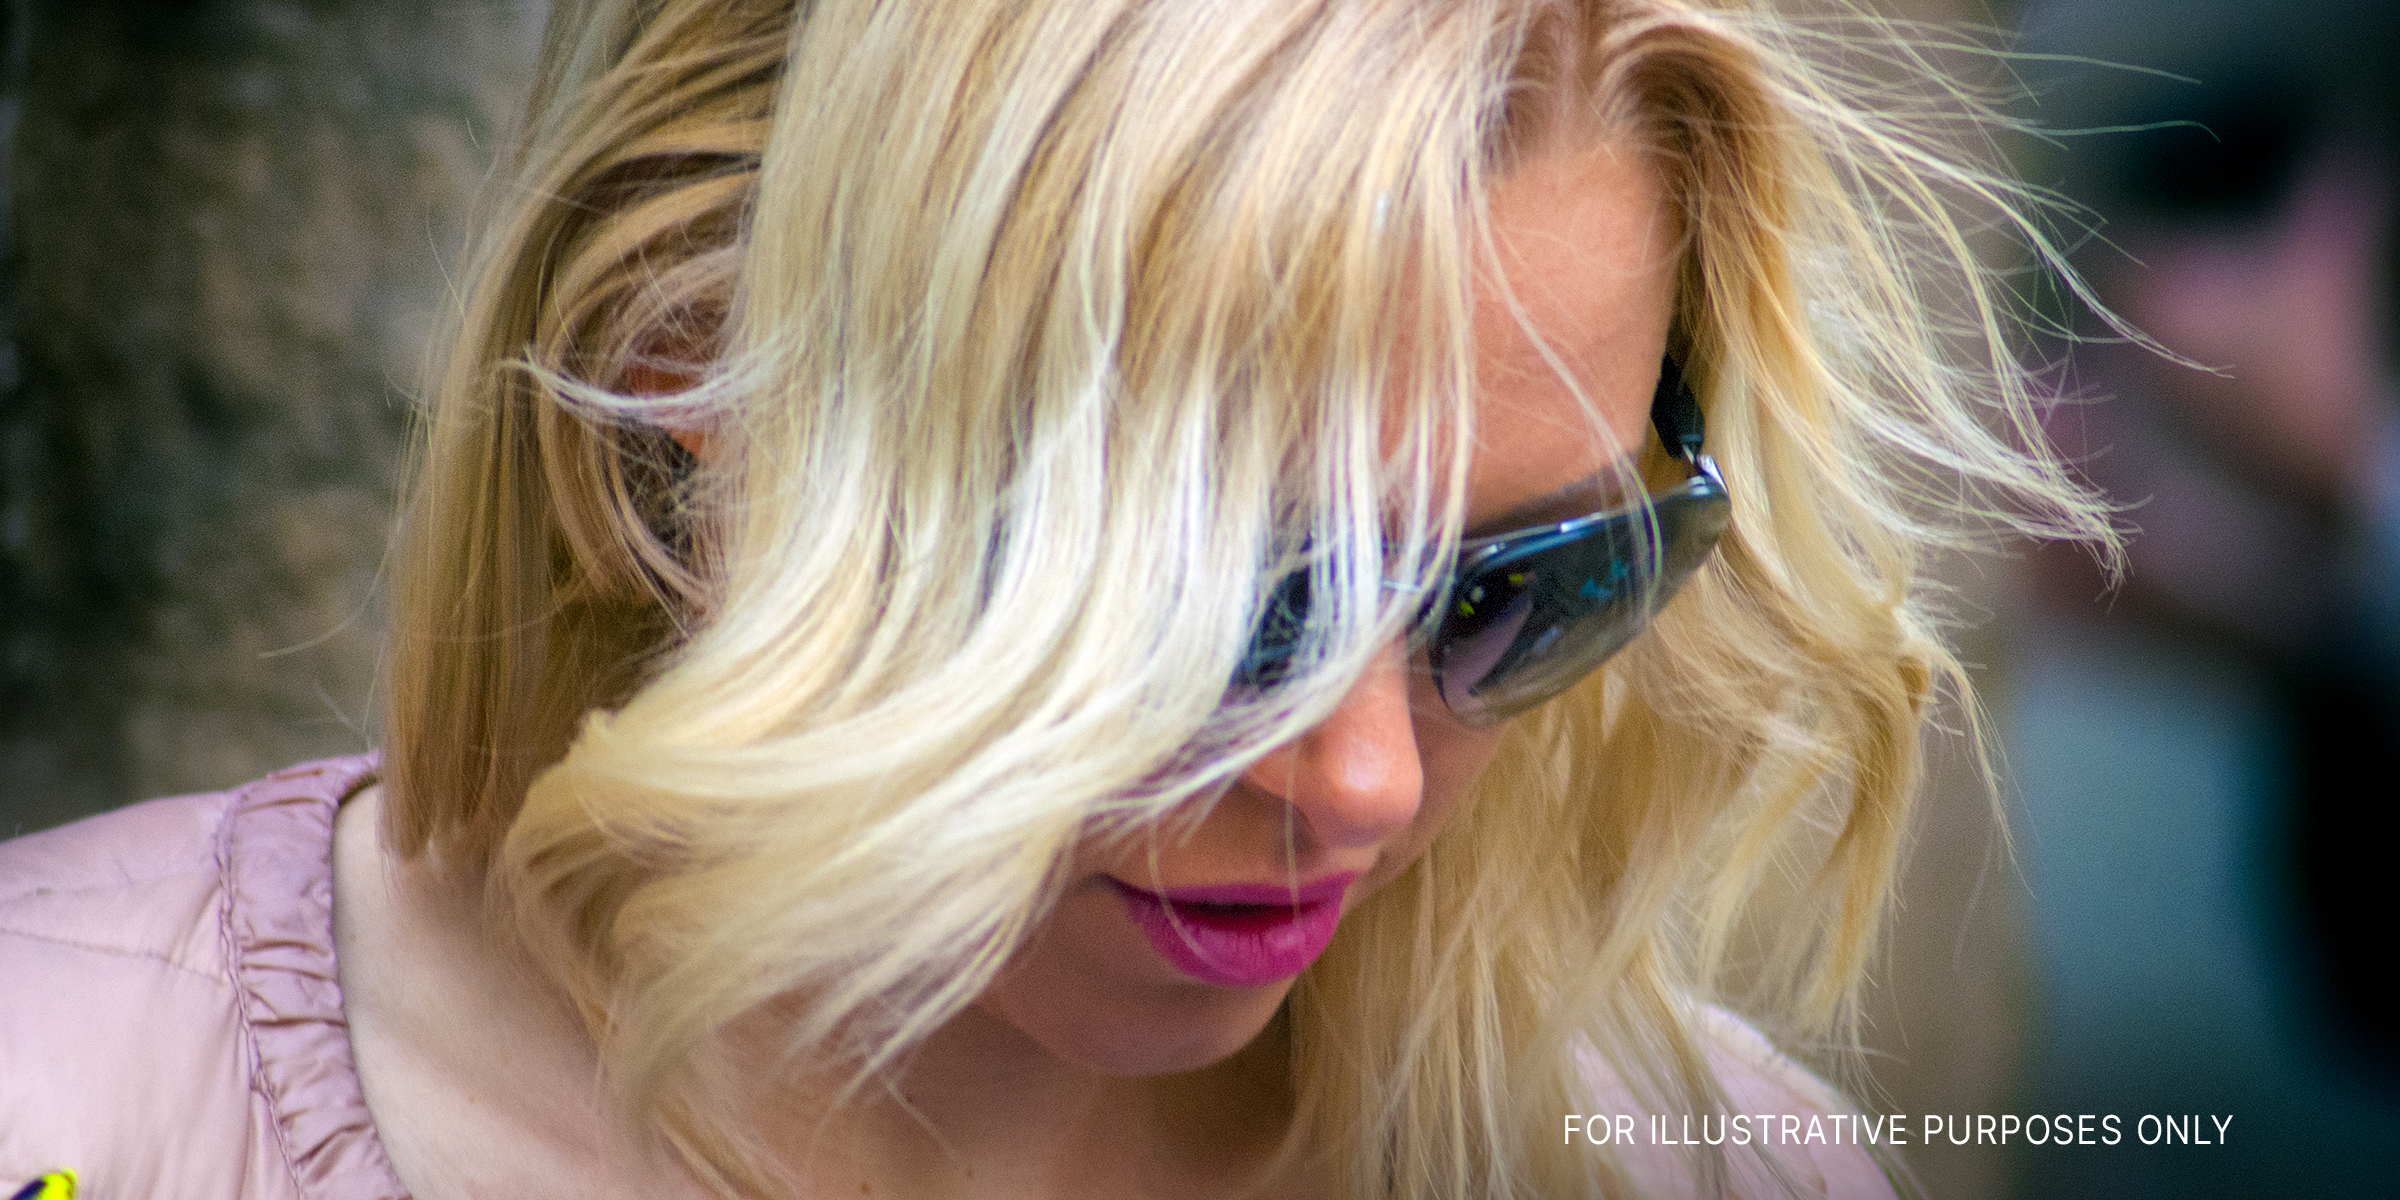 Eine blondhaarige Frau, die mit einer Sonnenbrille nach unten schaut | Quelle: Flickr.com/g_u/CC BY-SA 2.0